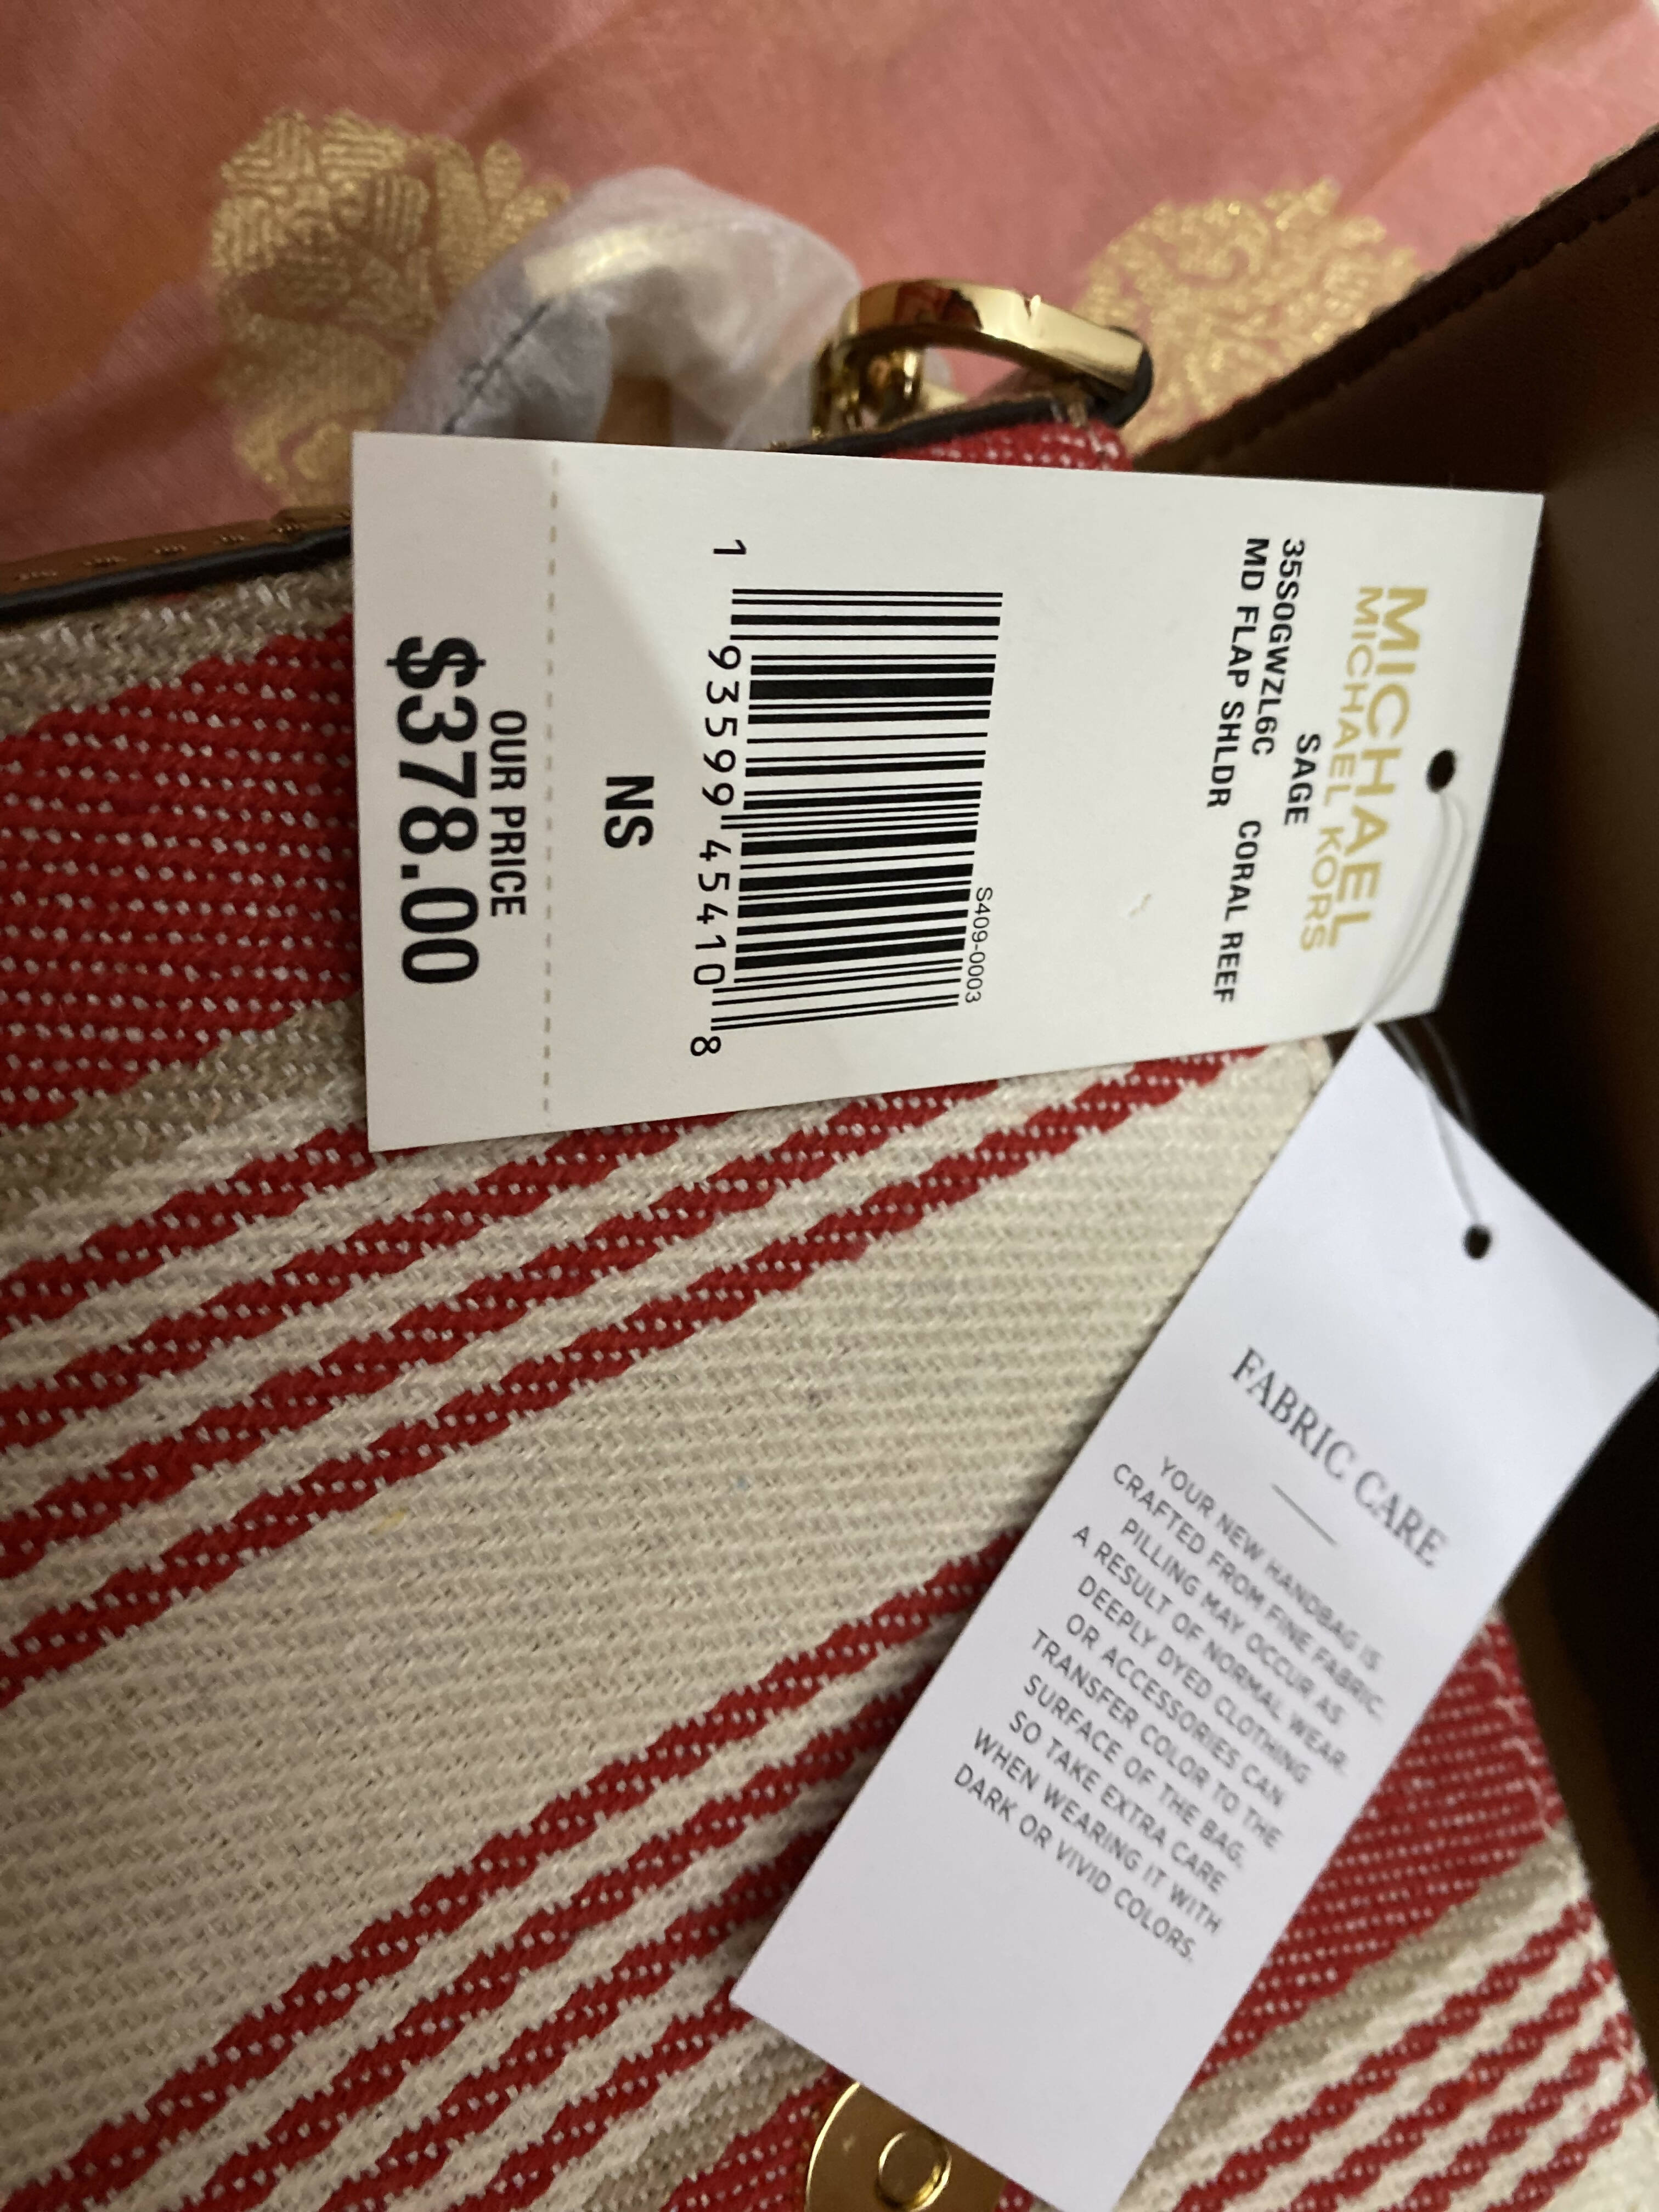 Michael Kors | Red White shoulder bag | Women Bags | Brand New